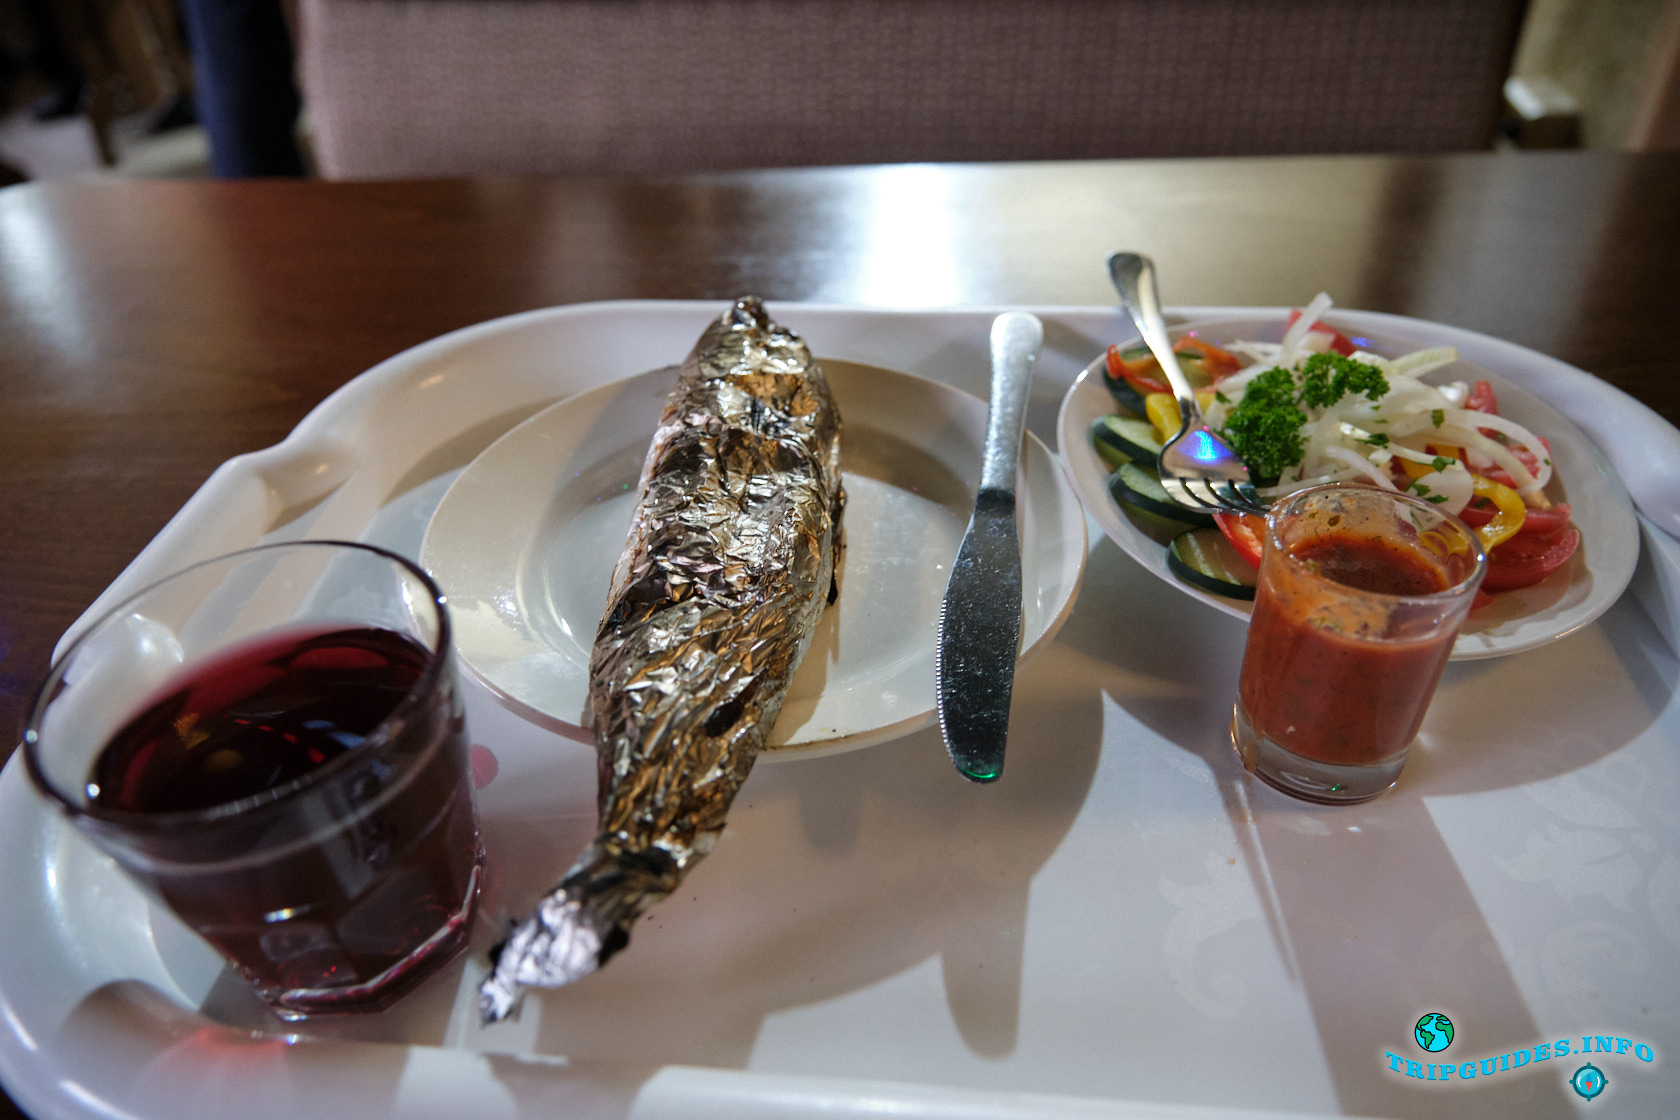 Фото №1 - Обед в ресторане - Экскурсия из Сочи в Абхазию